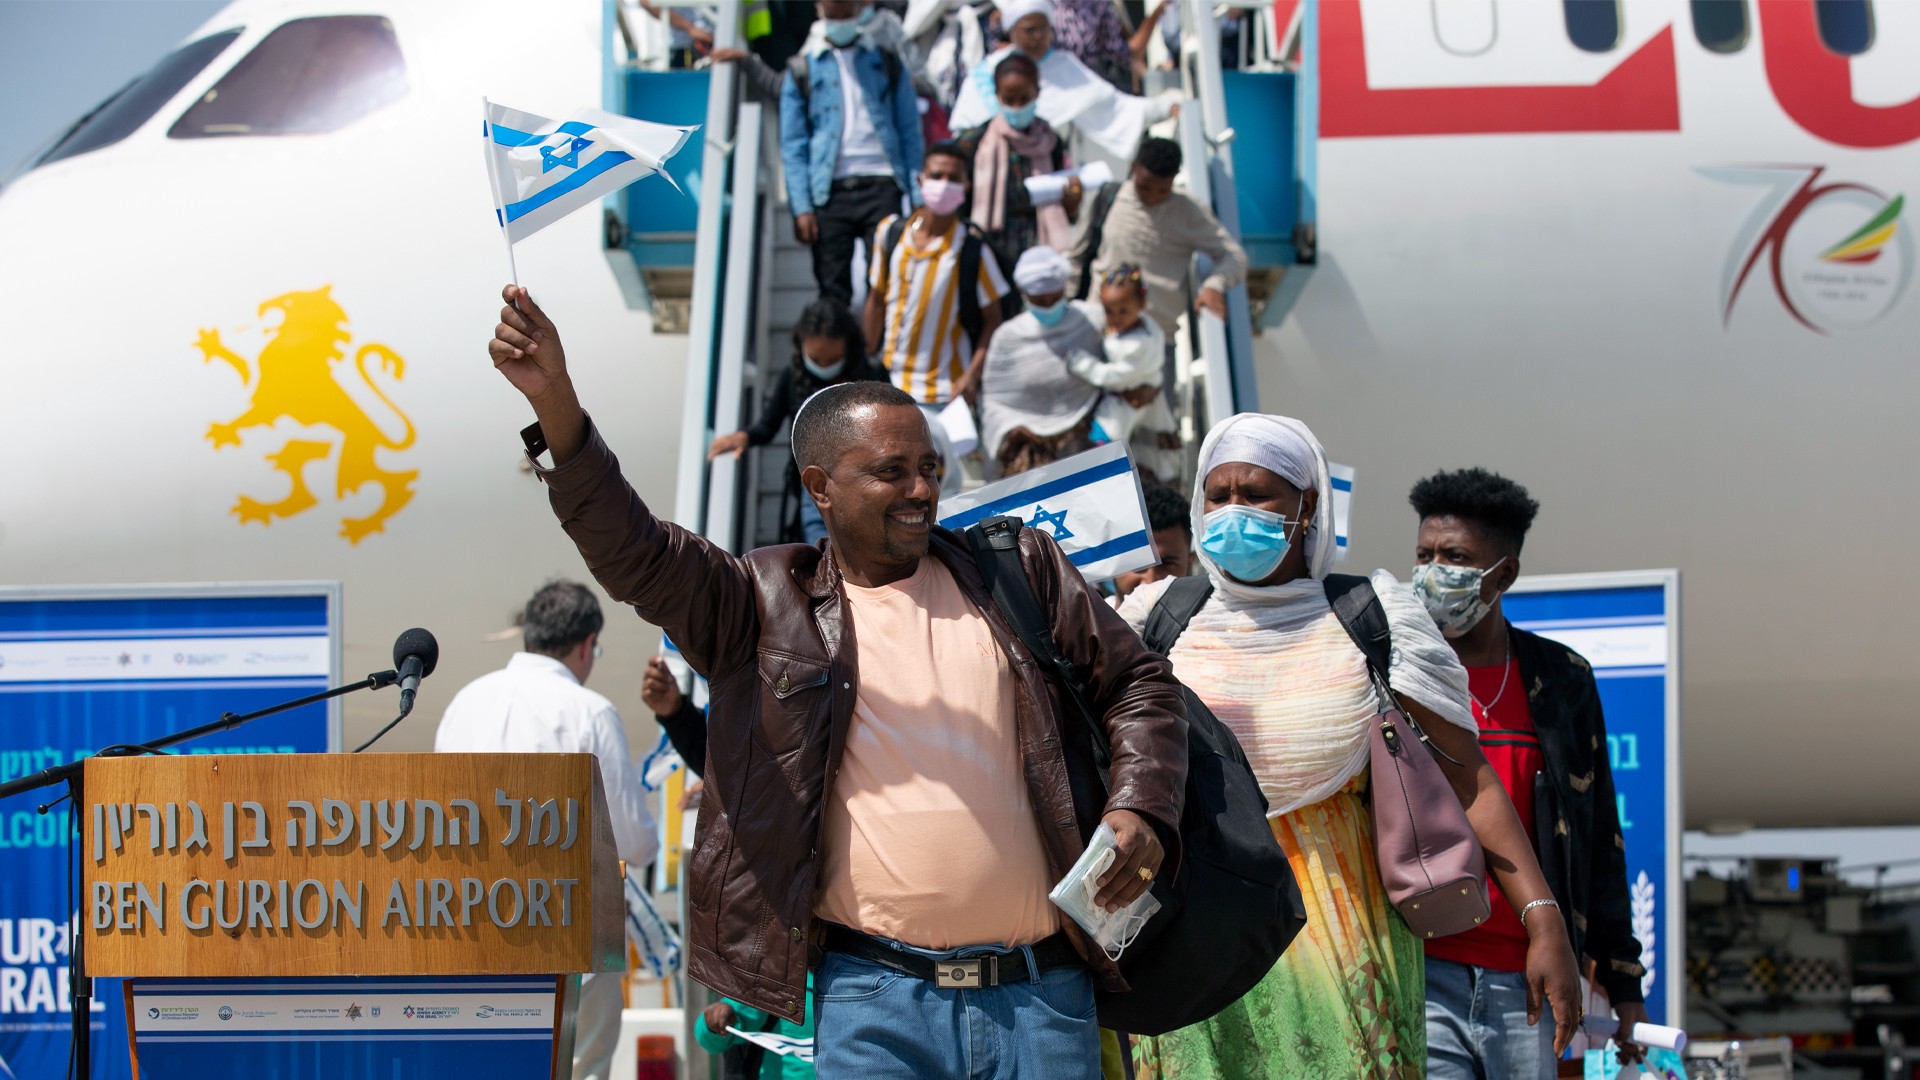 Ethiopians landing in Israel